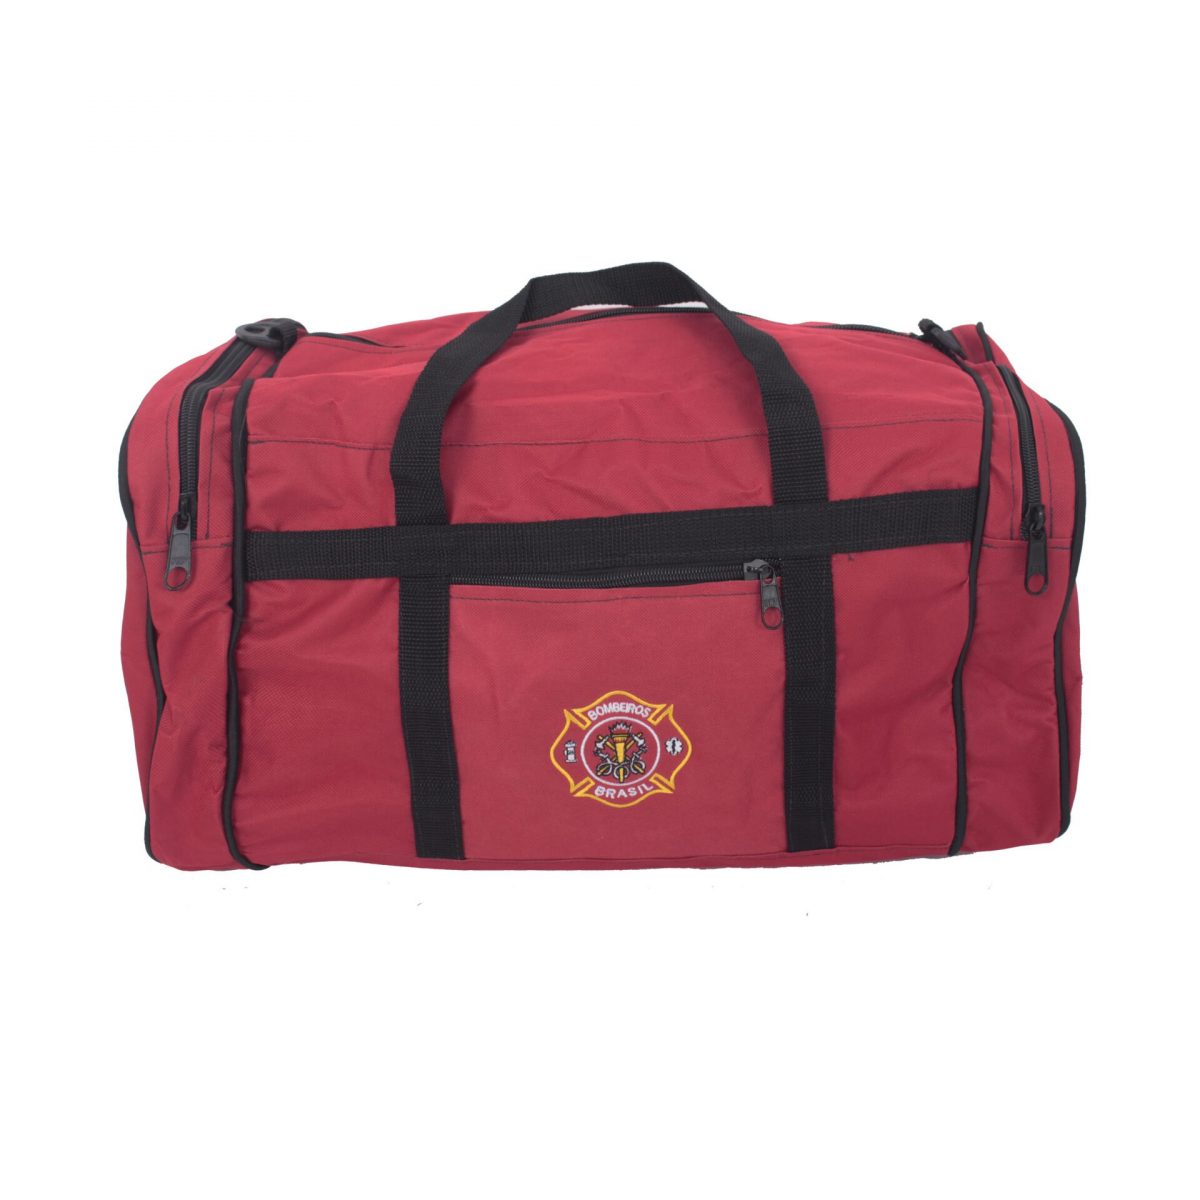 mochila enxoval bombeiro civil vermelha - Couro Art Bombeiro Civil, Saúde e Tático